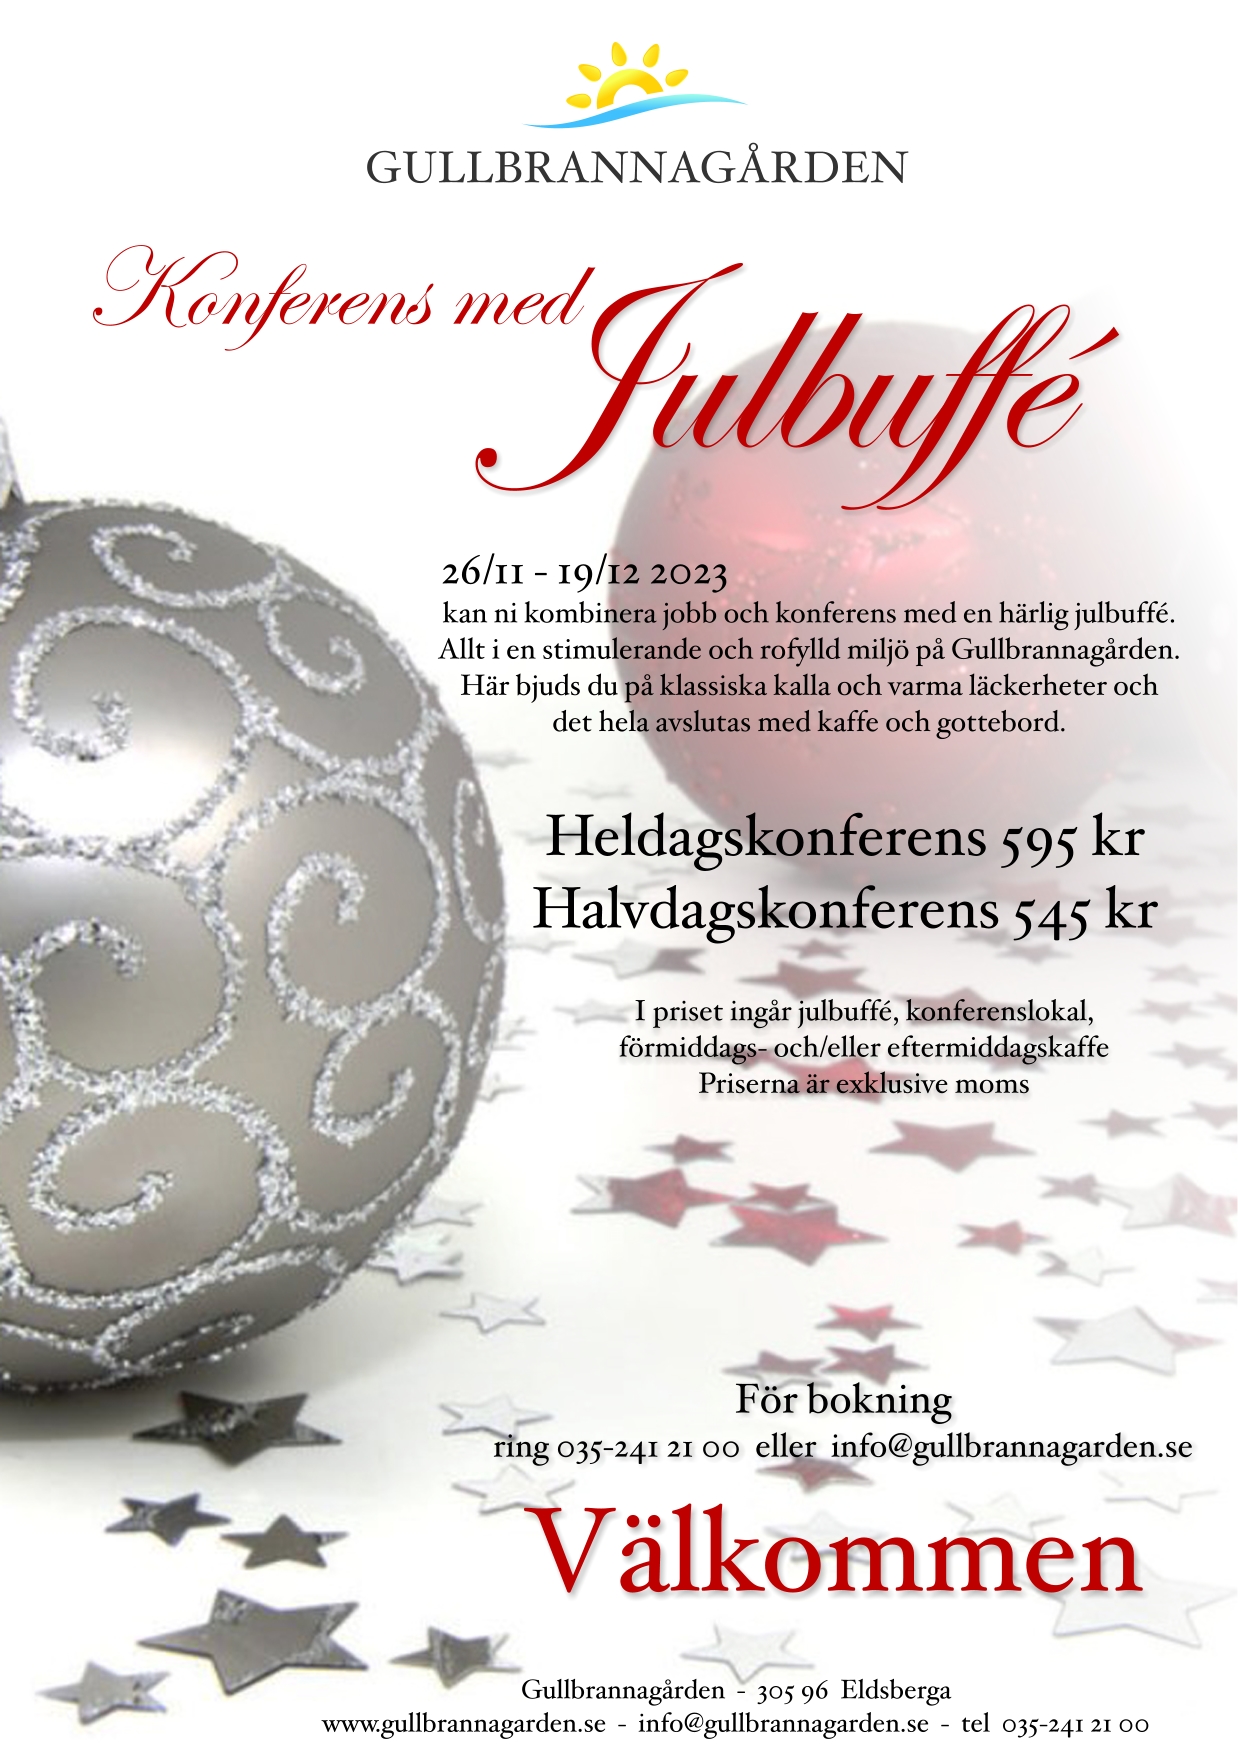 Bildbeskrivning saknas för evenemanget: Konferens med julbuffé